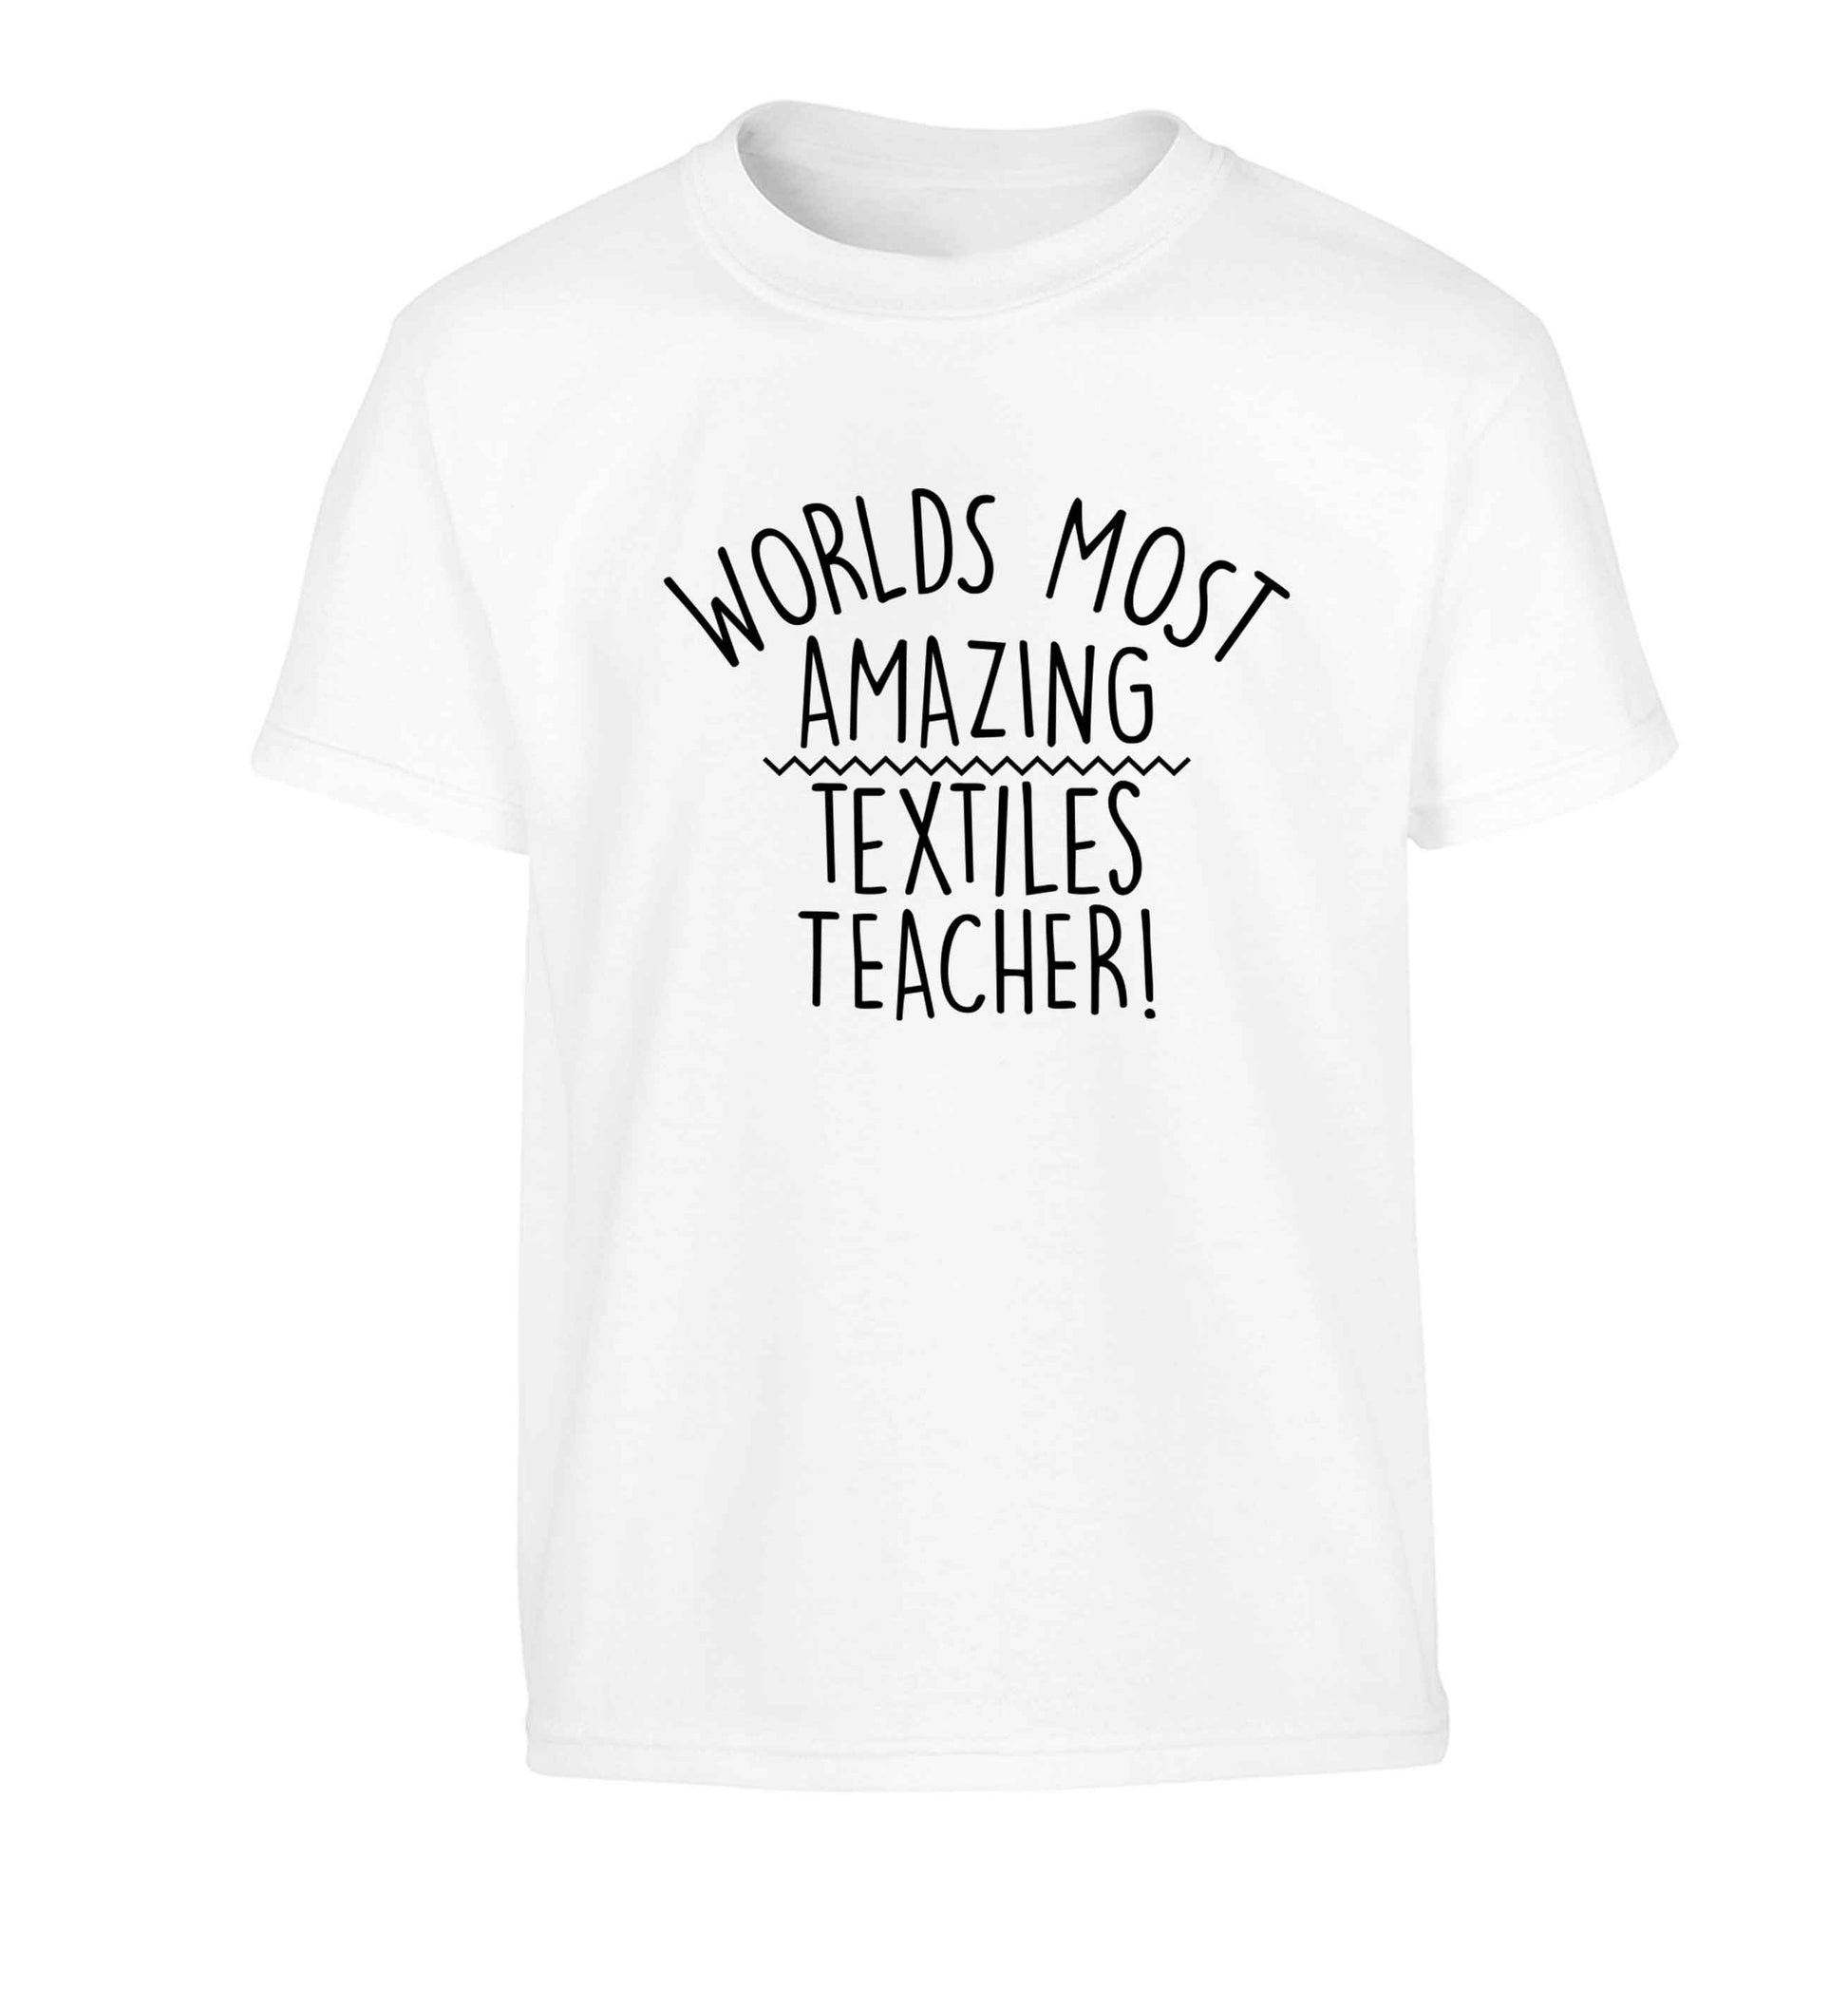 Worlds most amazing textiles teacher Children's white Tshirt 12-13 Years